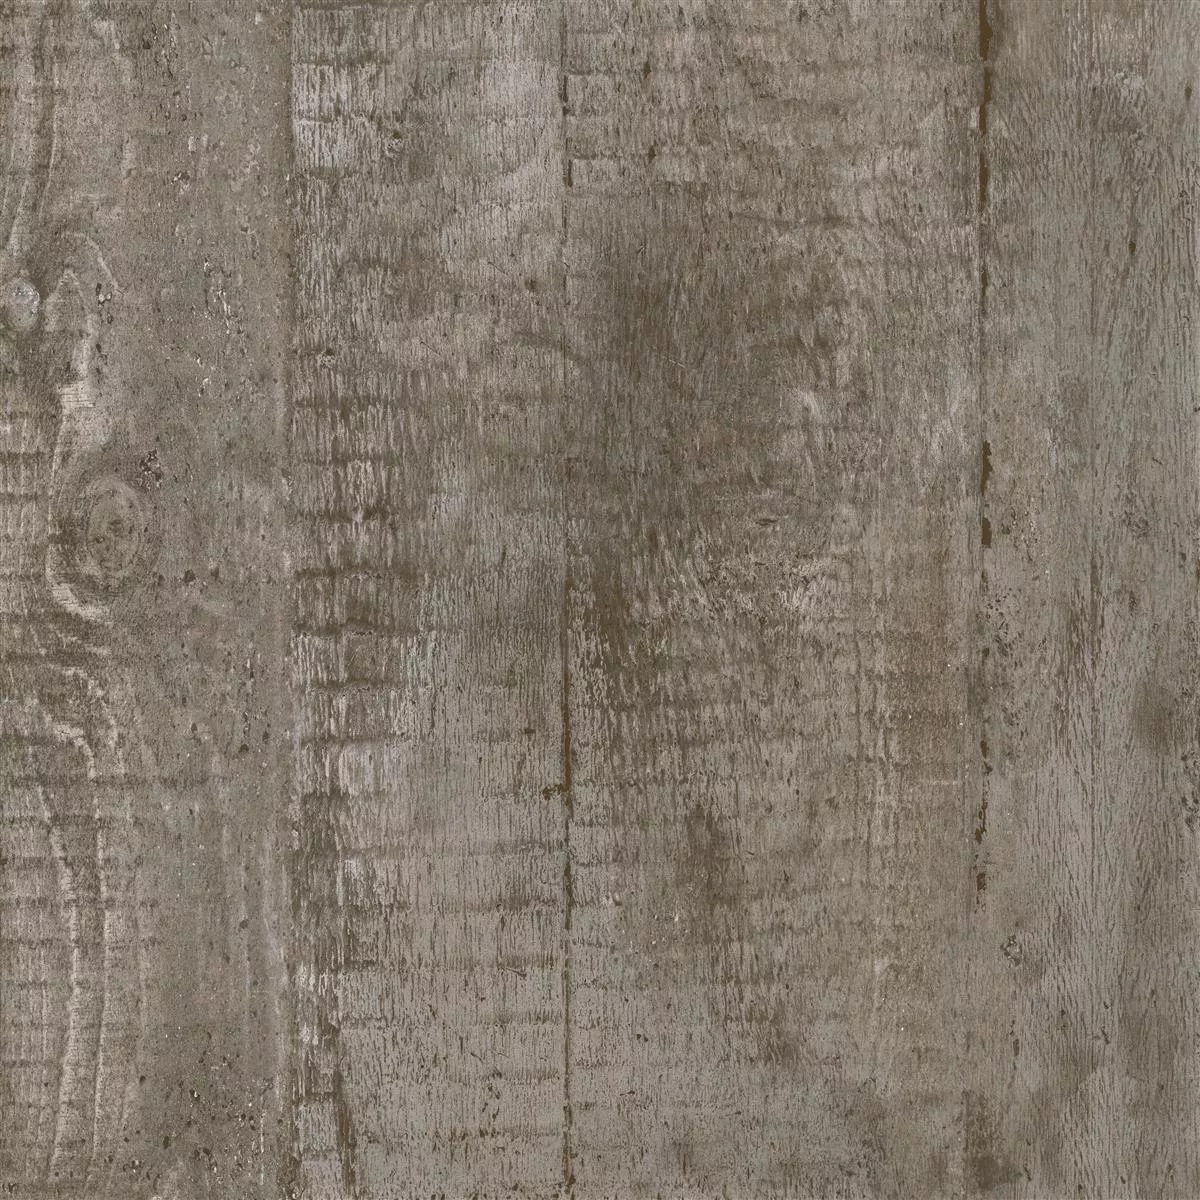 Muster Bodenfliesen Gorki Holzoptik 60x60cm Glasiert Braun